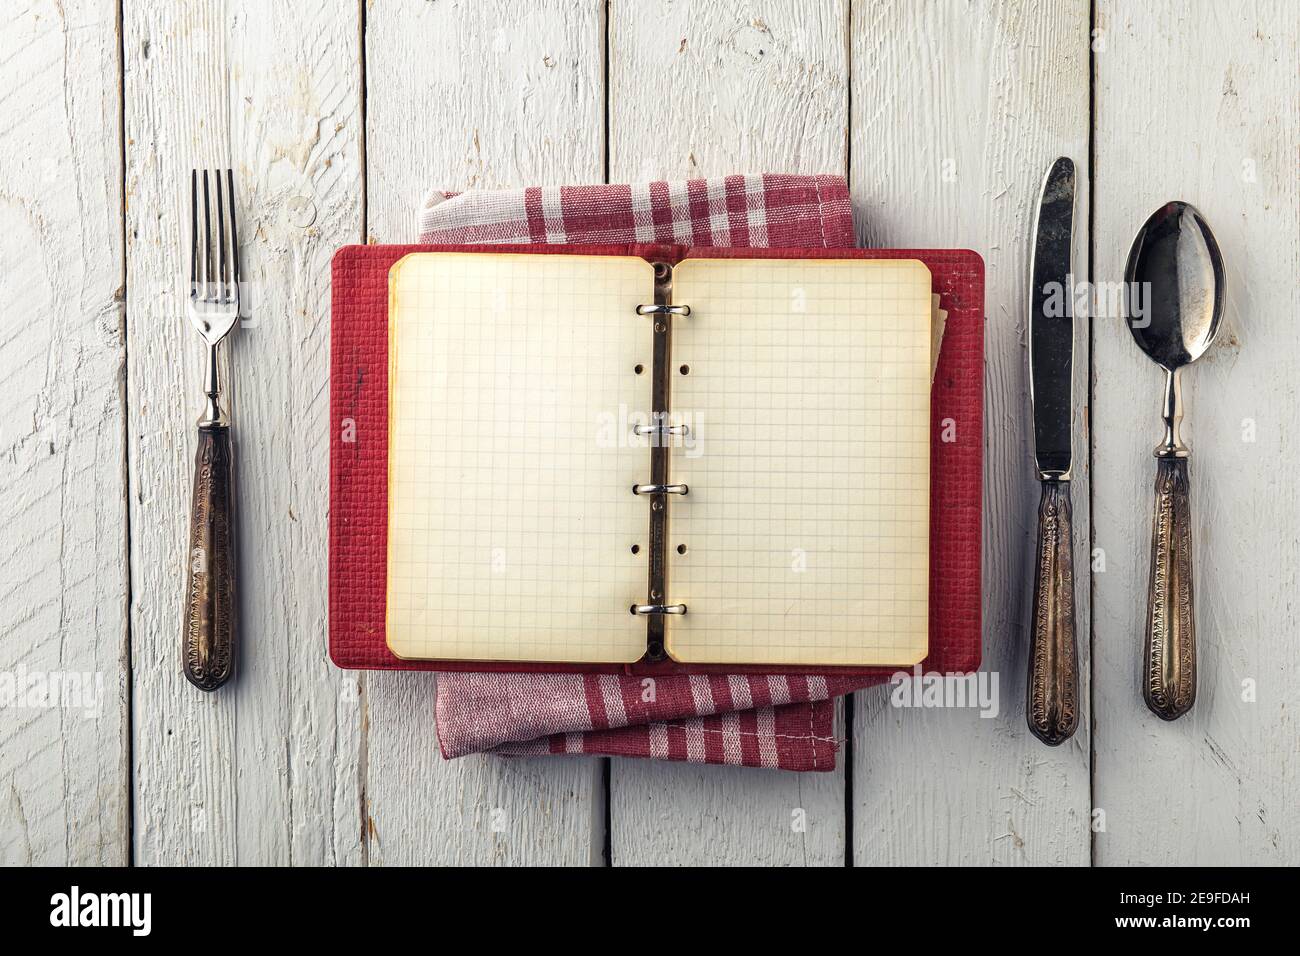 Livre de cuisine vide vintage sur table en bois avec vieux couverts Banque D'Images